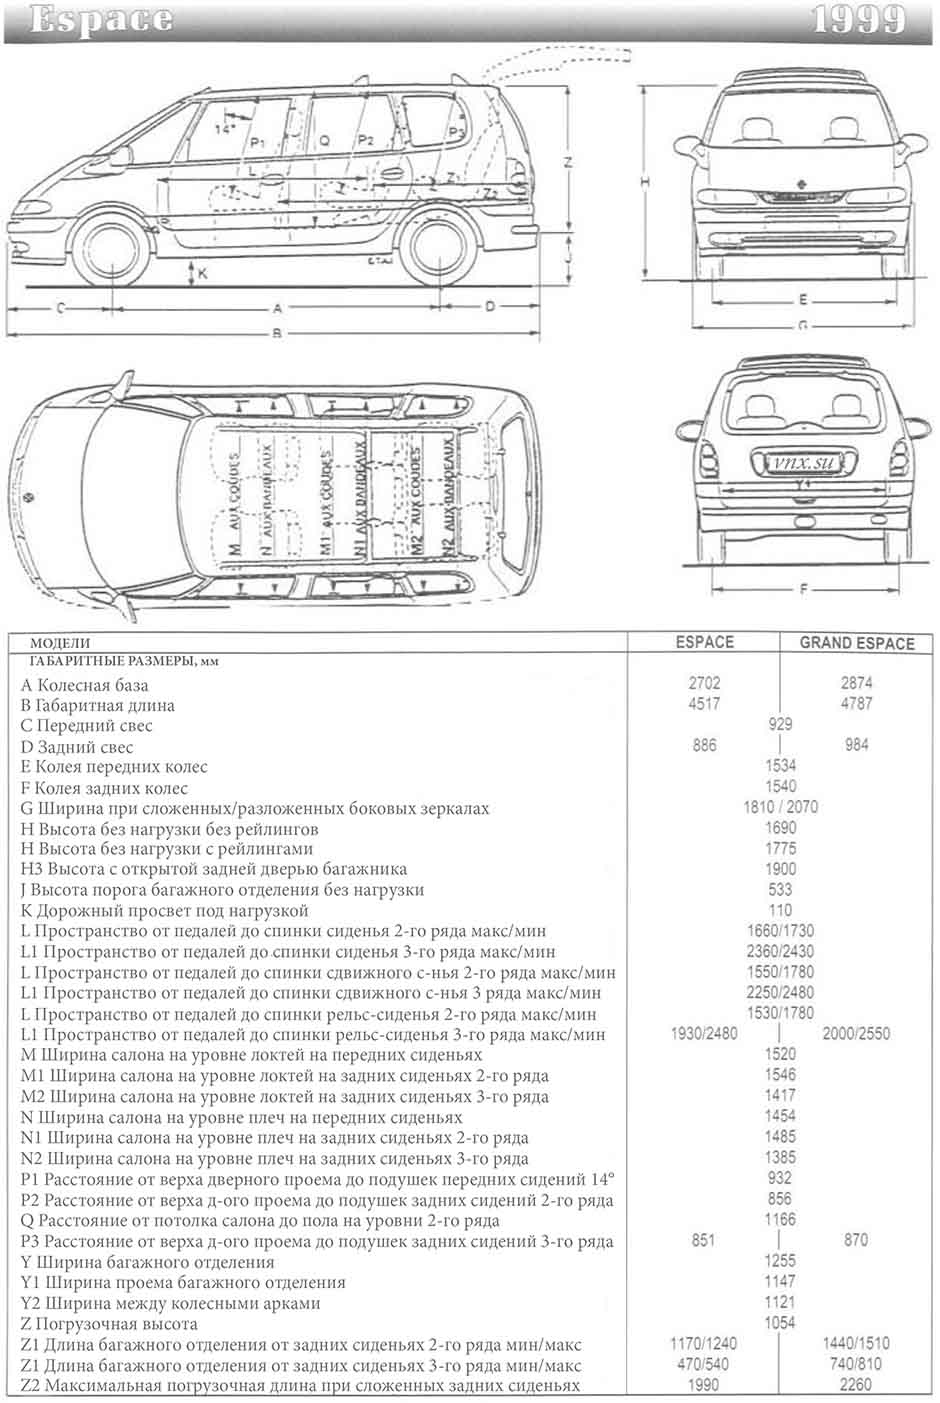 Габаритные размеры Рено Эспейс 1999 (dimensions Renault Espace III)